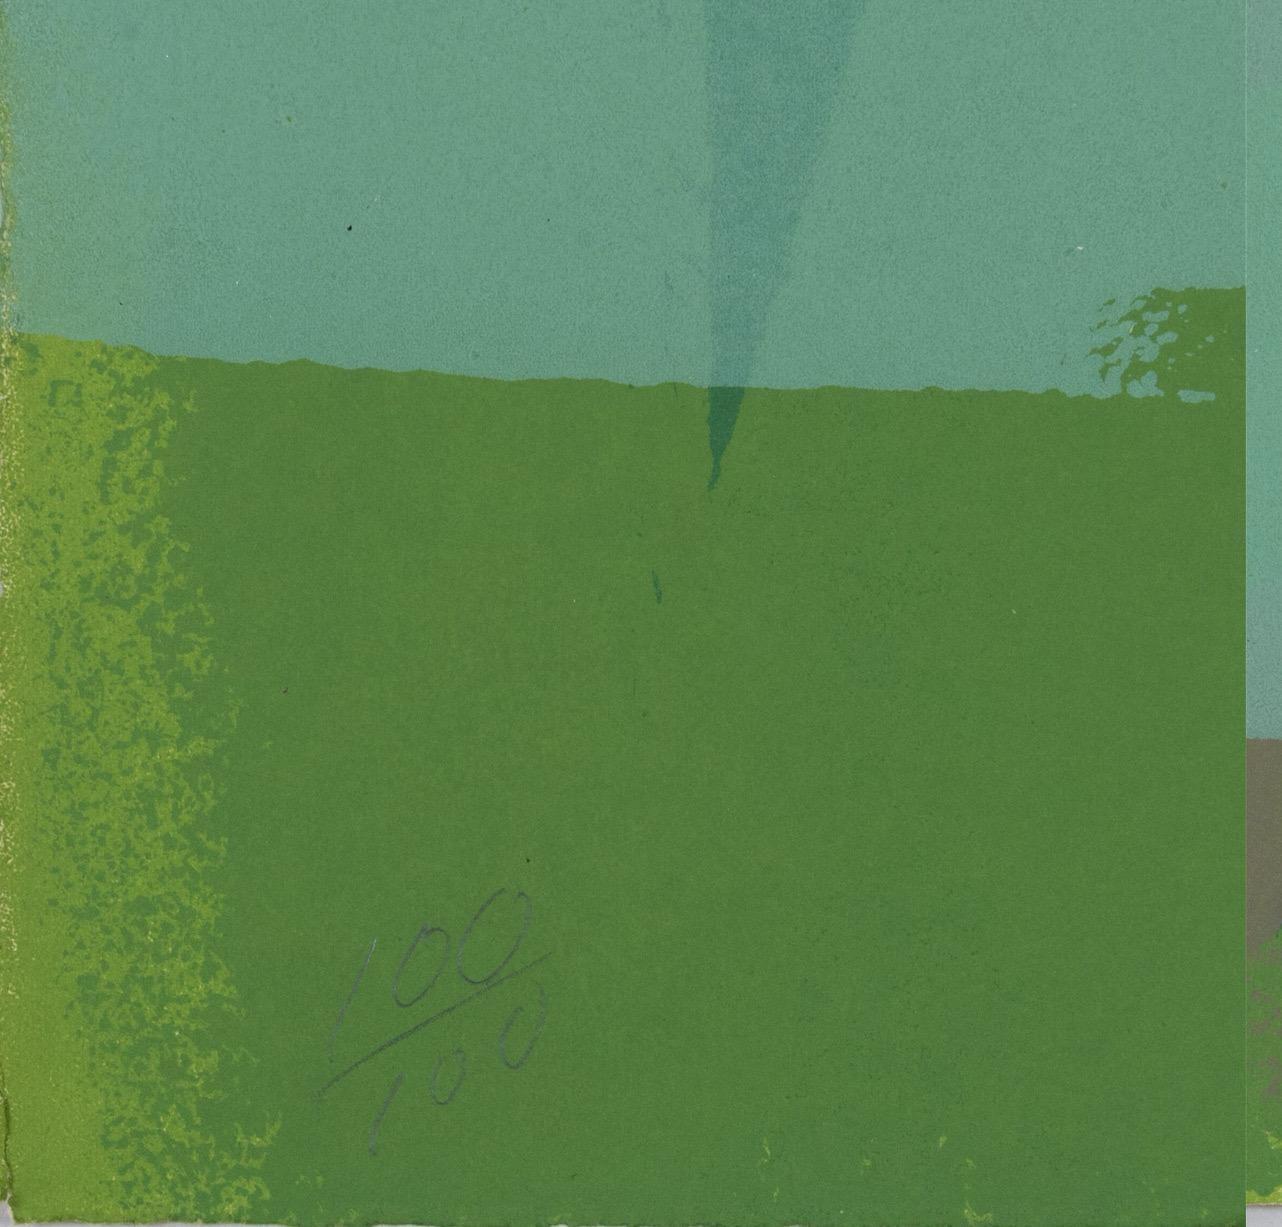 Edward Avedisian (1936-2007), Grünes Gold, 1969

Farblithographie auf gewebtem Papier.
Mit Bleistift signiert, datiert und nummeriert.
Auflage 100/100

Abmessungen:
22 1/4 Zoll L x 30 1/4 Zoll H, ungerahmt

Provenienz: 
Brooke Alexander Gallery, NY